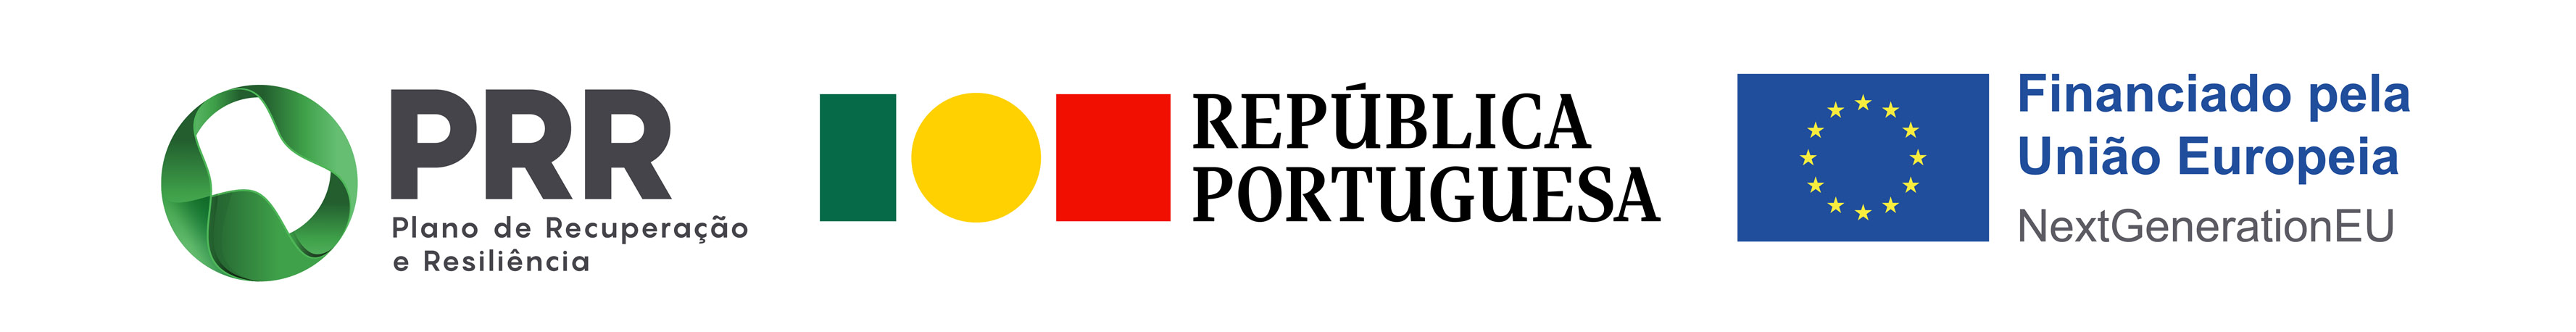 PRR Plano de recuperação e resiliência Português
